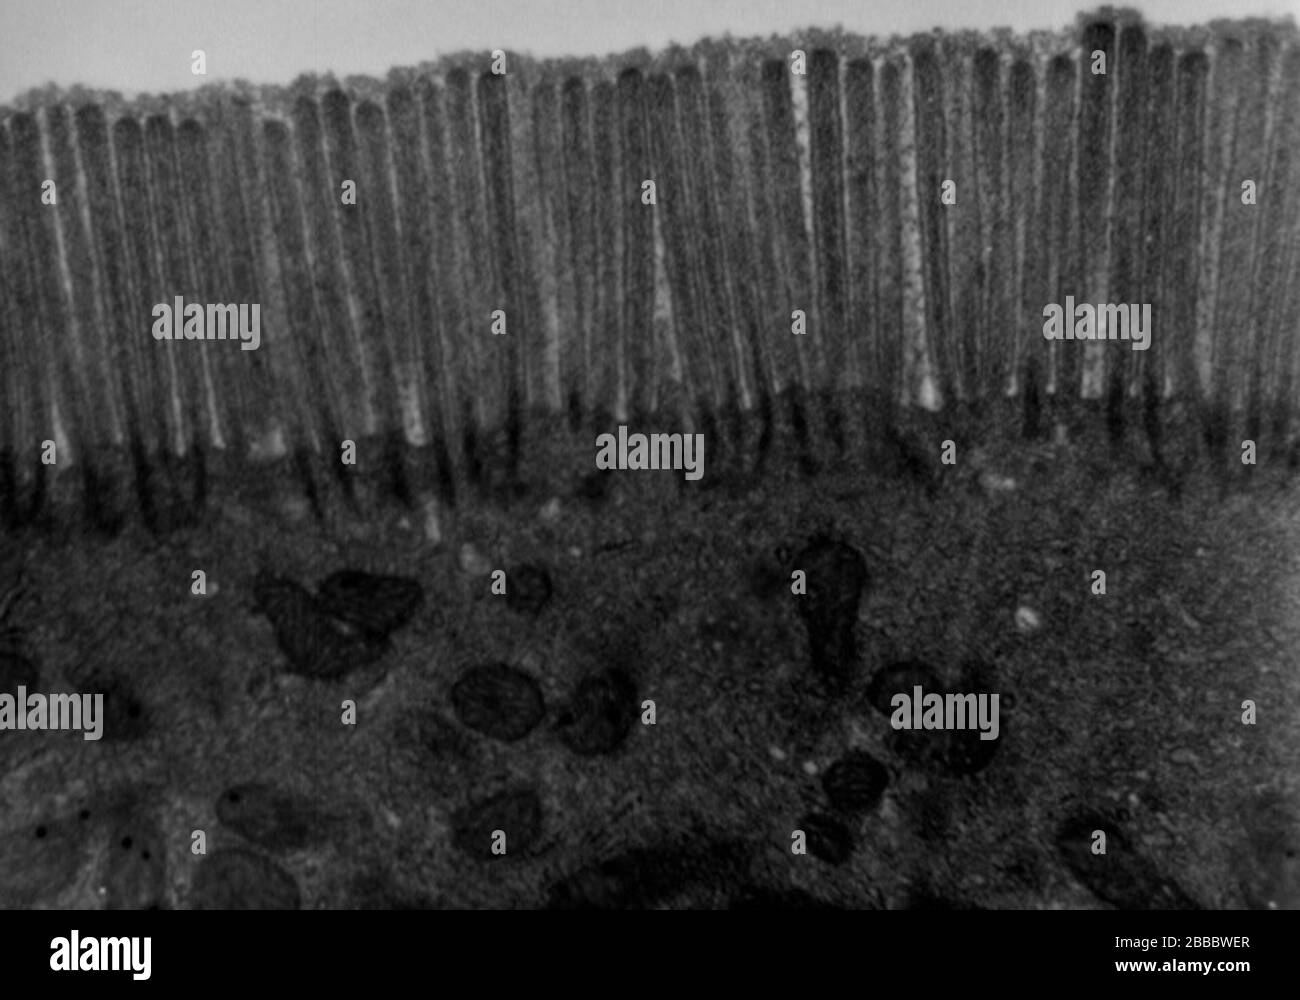 Englisch: Transmissionselektronenmikroskop Bild dünnen Abschnitts, der durch eine menschliche Jejunum (Segment des Dünndarms)-Epithelzelle geschnitten wird. Das Bild zeigt das apikale Ende der absorbierenden Zelle mit der dicht gepackten ...